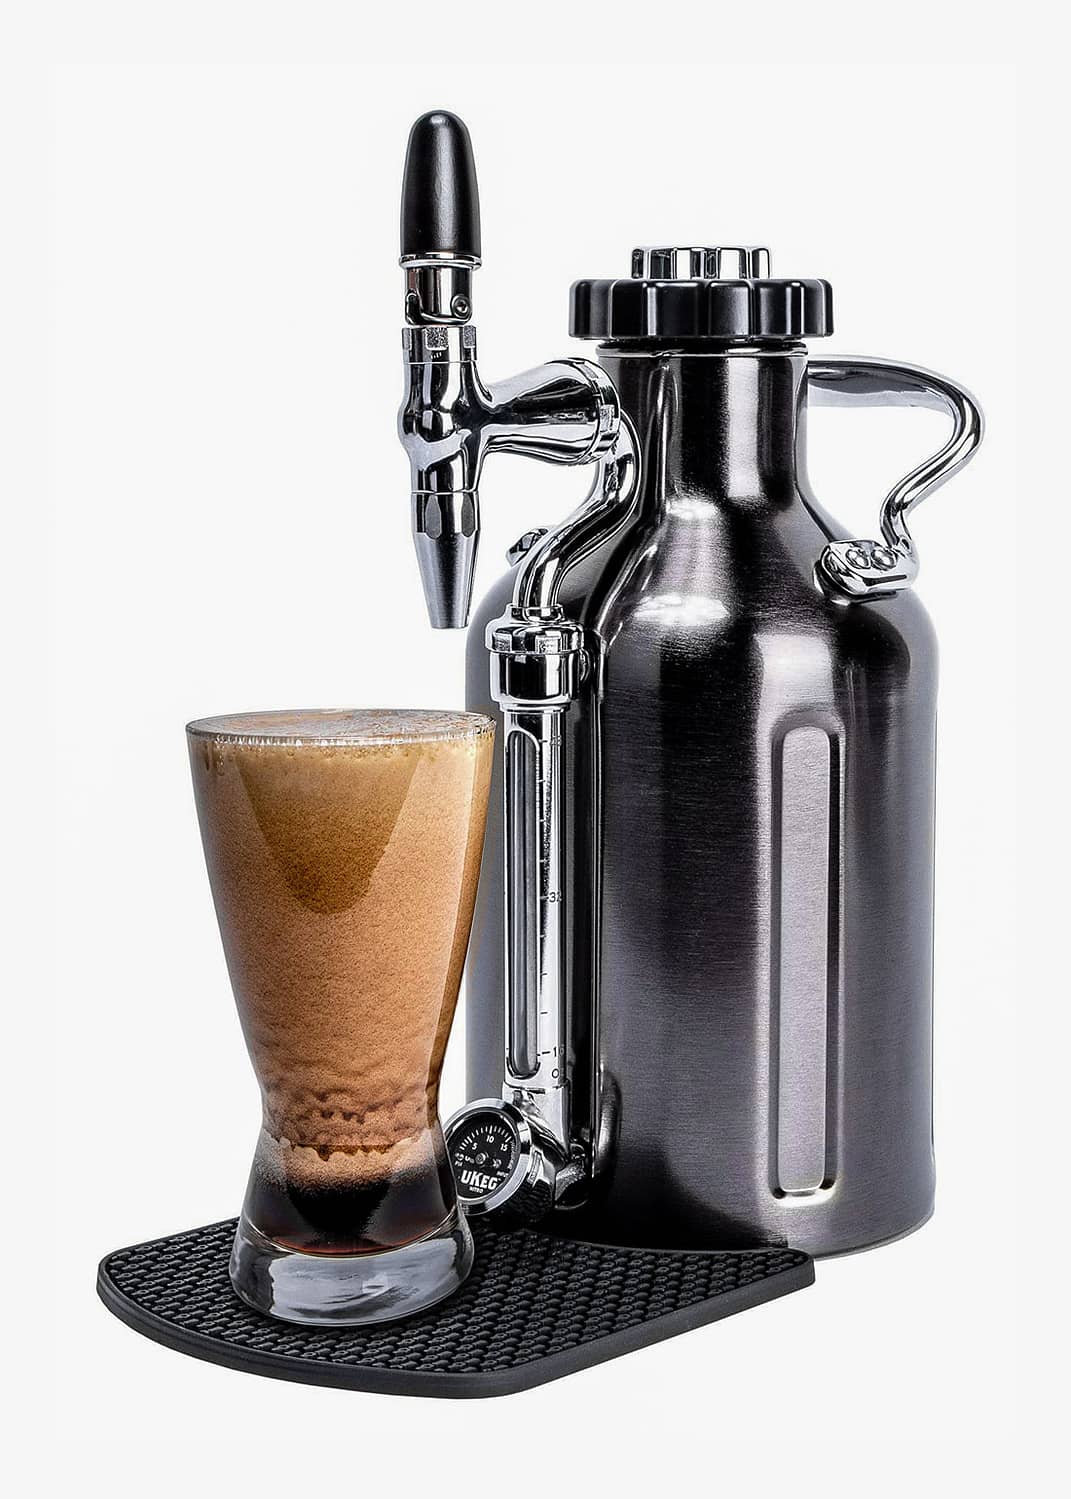 Nitro Cold Brew Coffee Maker